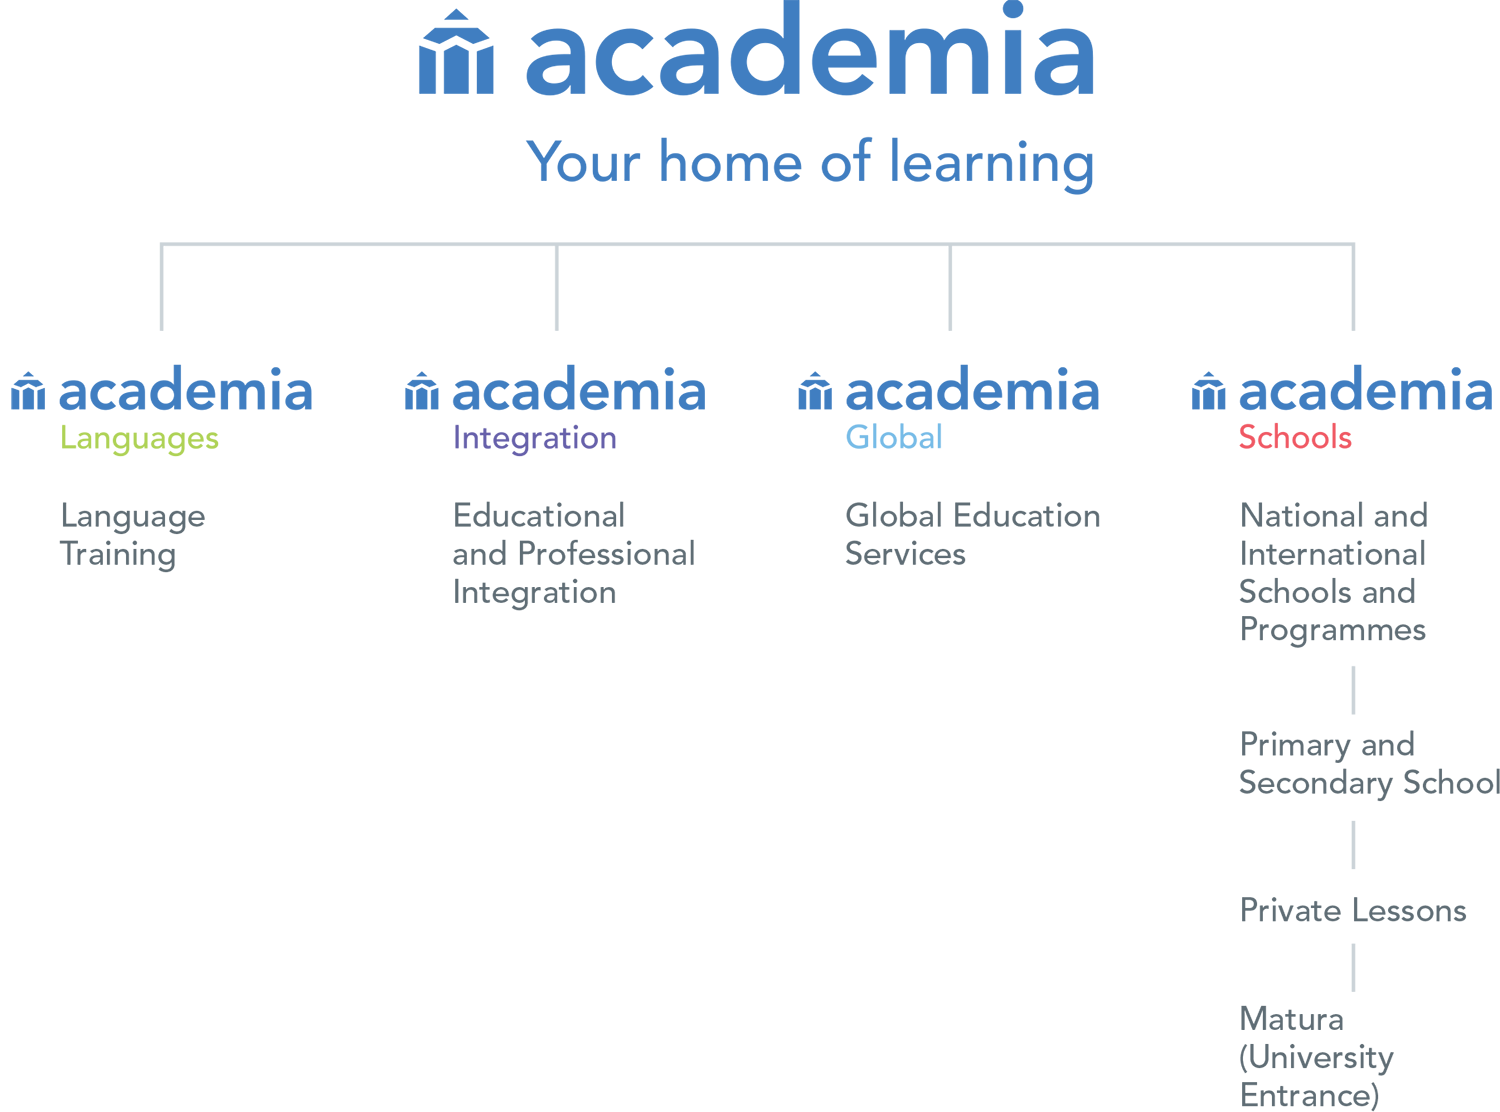 Academia Global